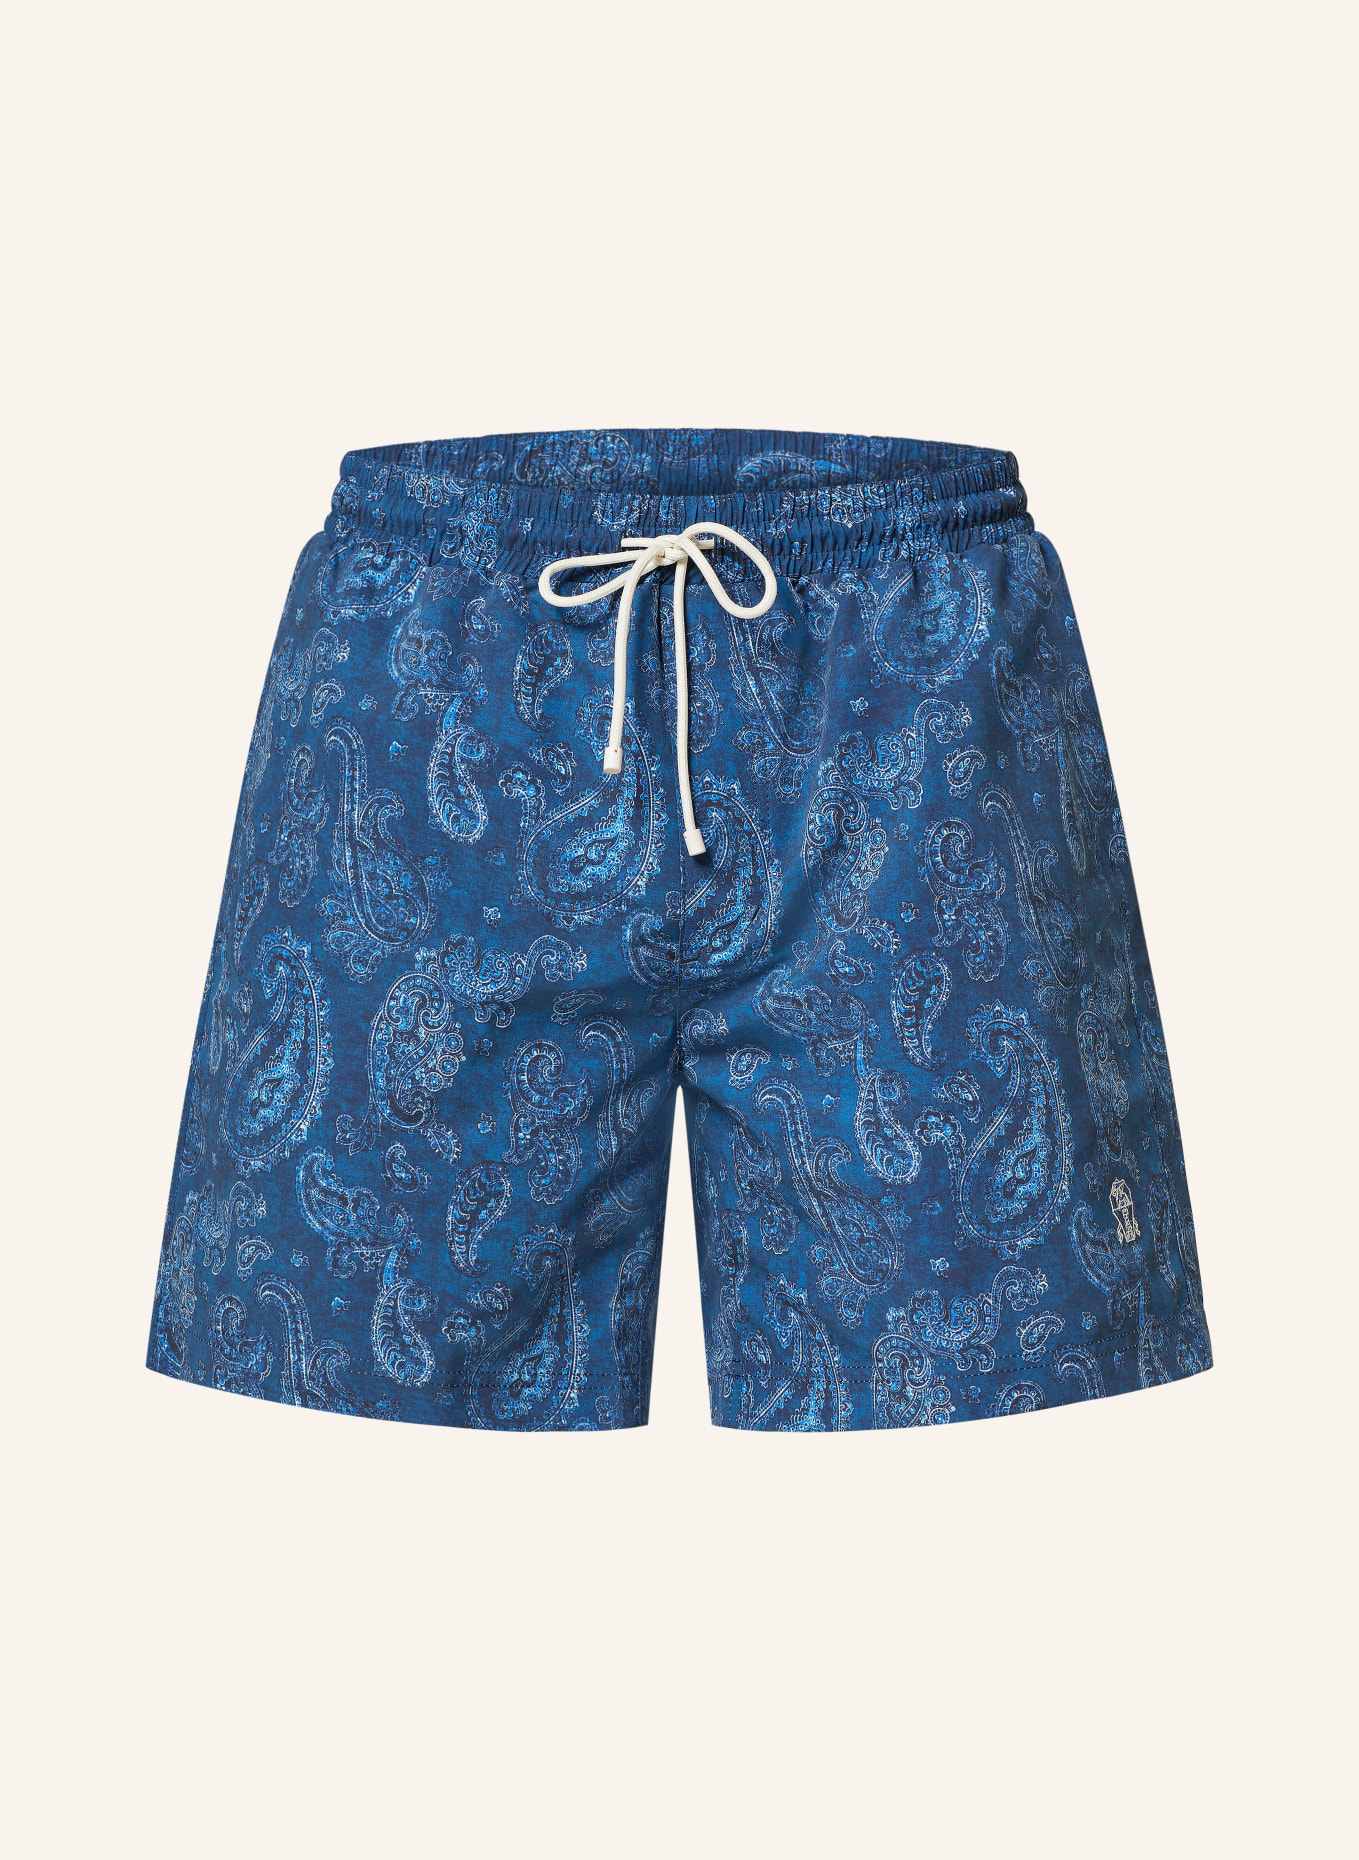 BRUNELLO CUCINELLI Swim shorts, Color: DARK BLUE/ BLUE/ WHITE (Image 1)